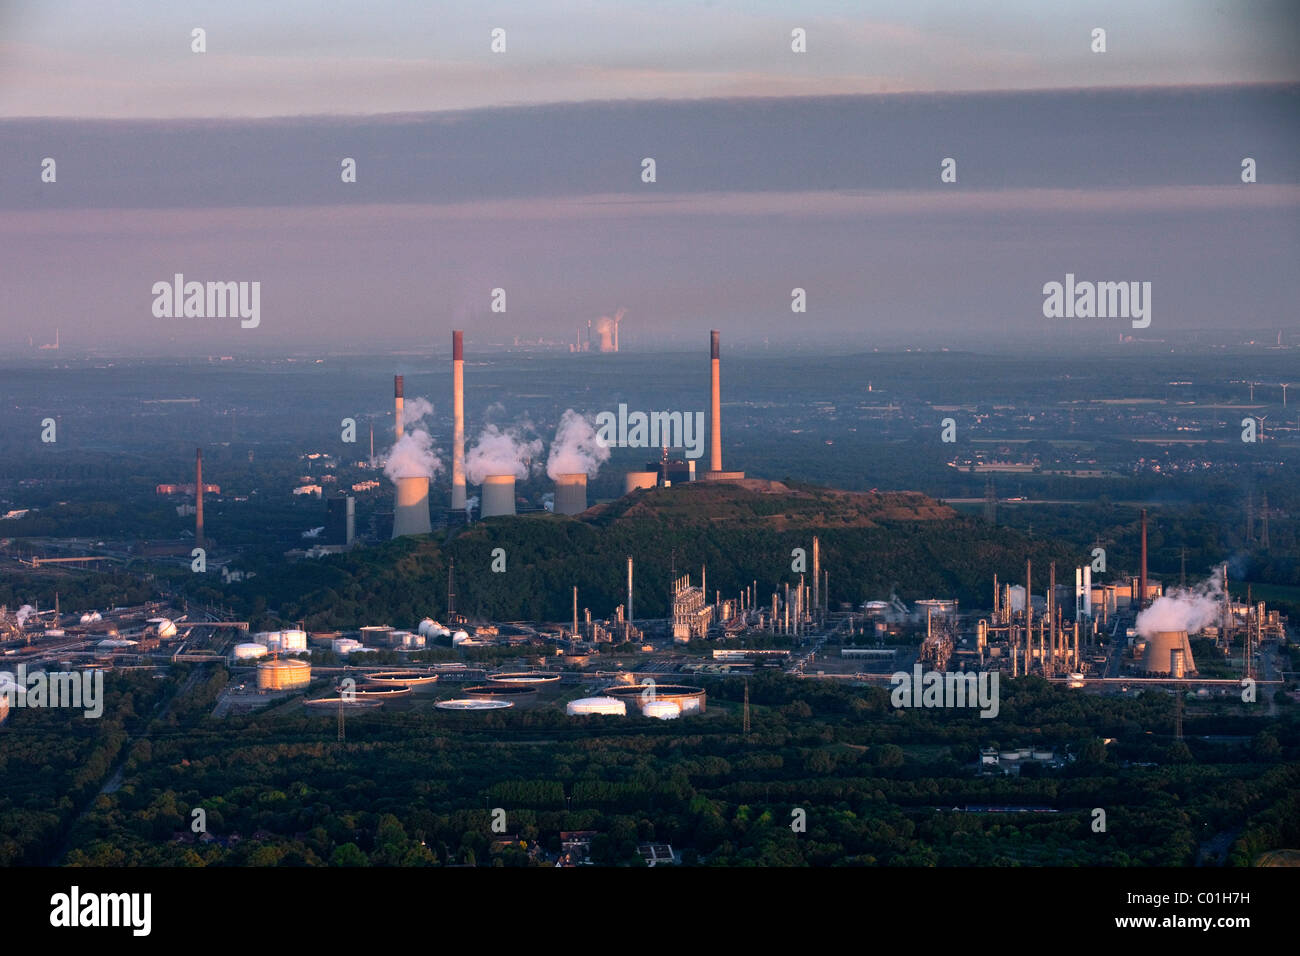 Vue aérienne, quartier Buer, Scholven, raffinerie BP, Aral, Scholven STEAG centrale, centrale de charbon, de Ruhr area Banque D'Images